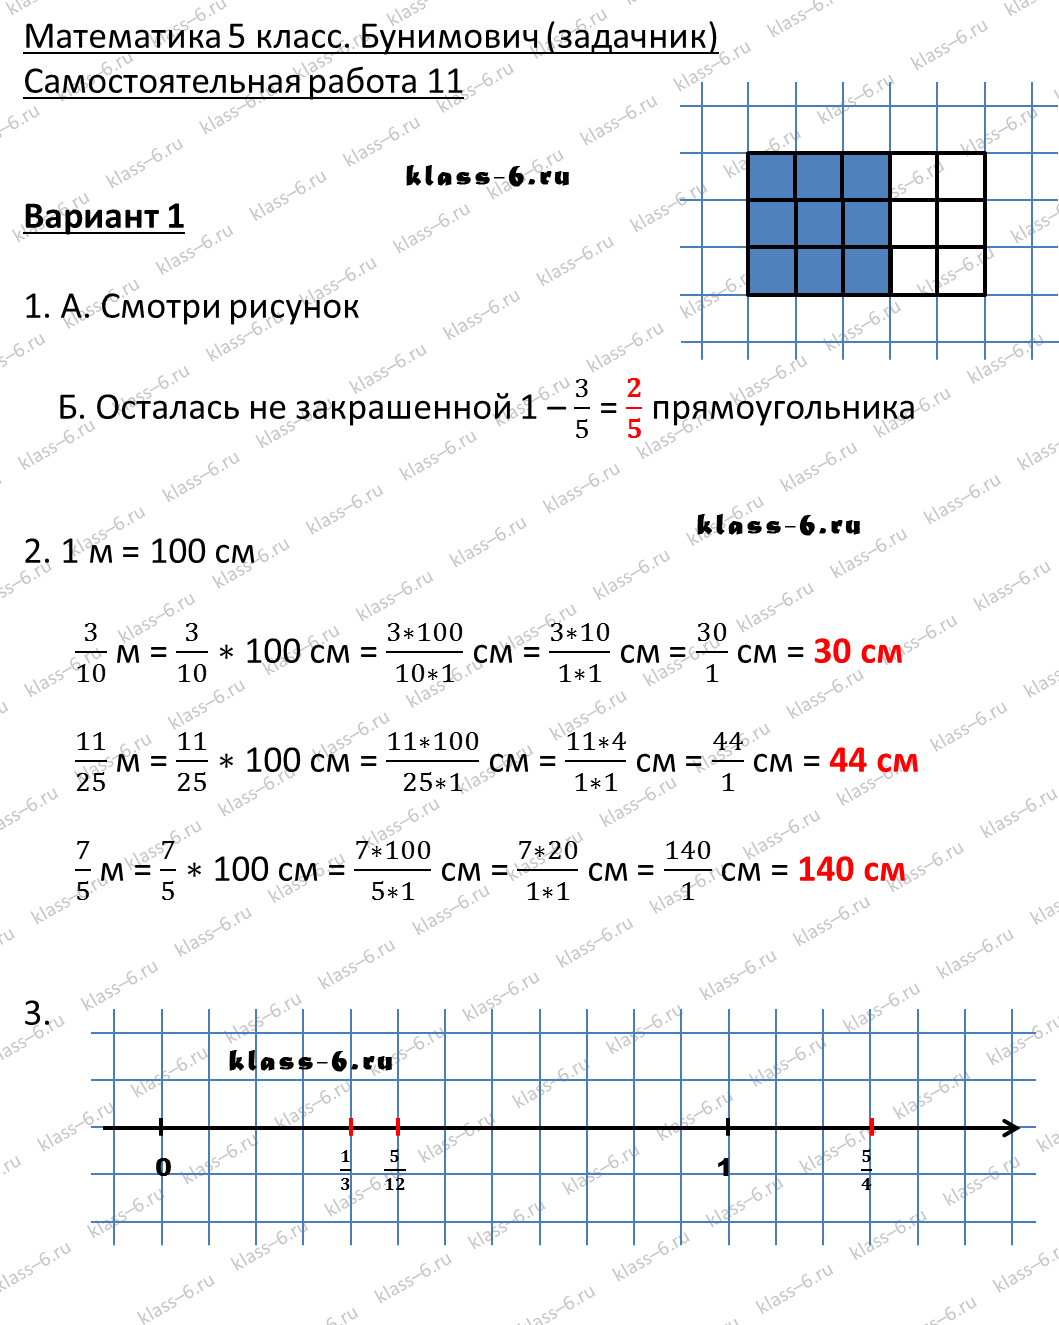 решебник и гдз по математике задачник Бунимович 5 класс самостоятельная работа 11-v1